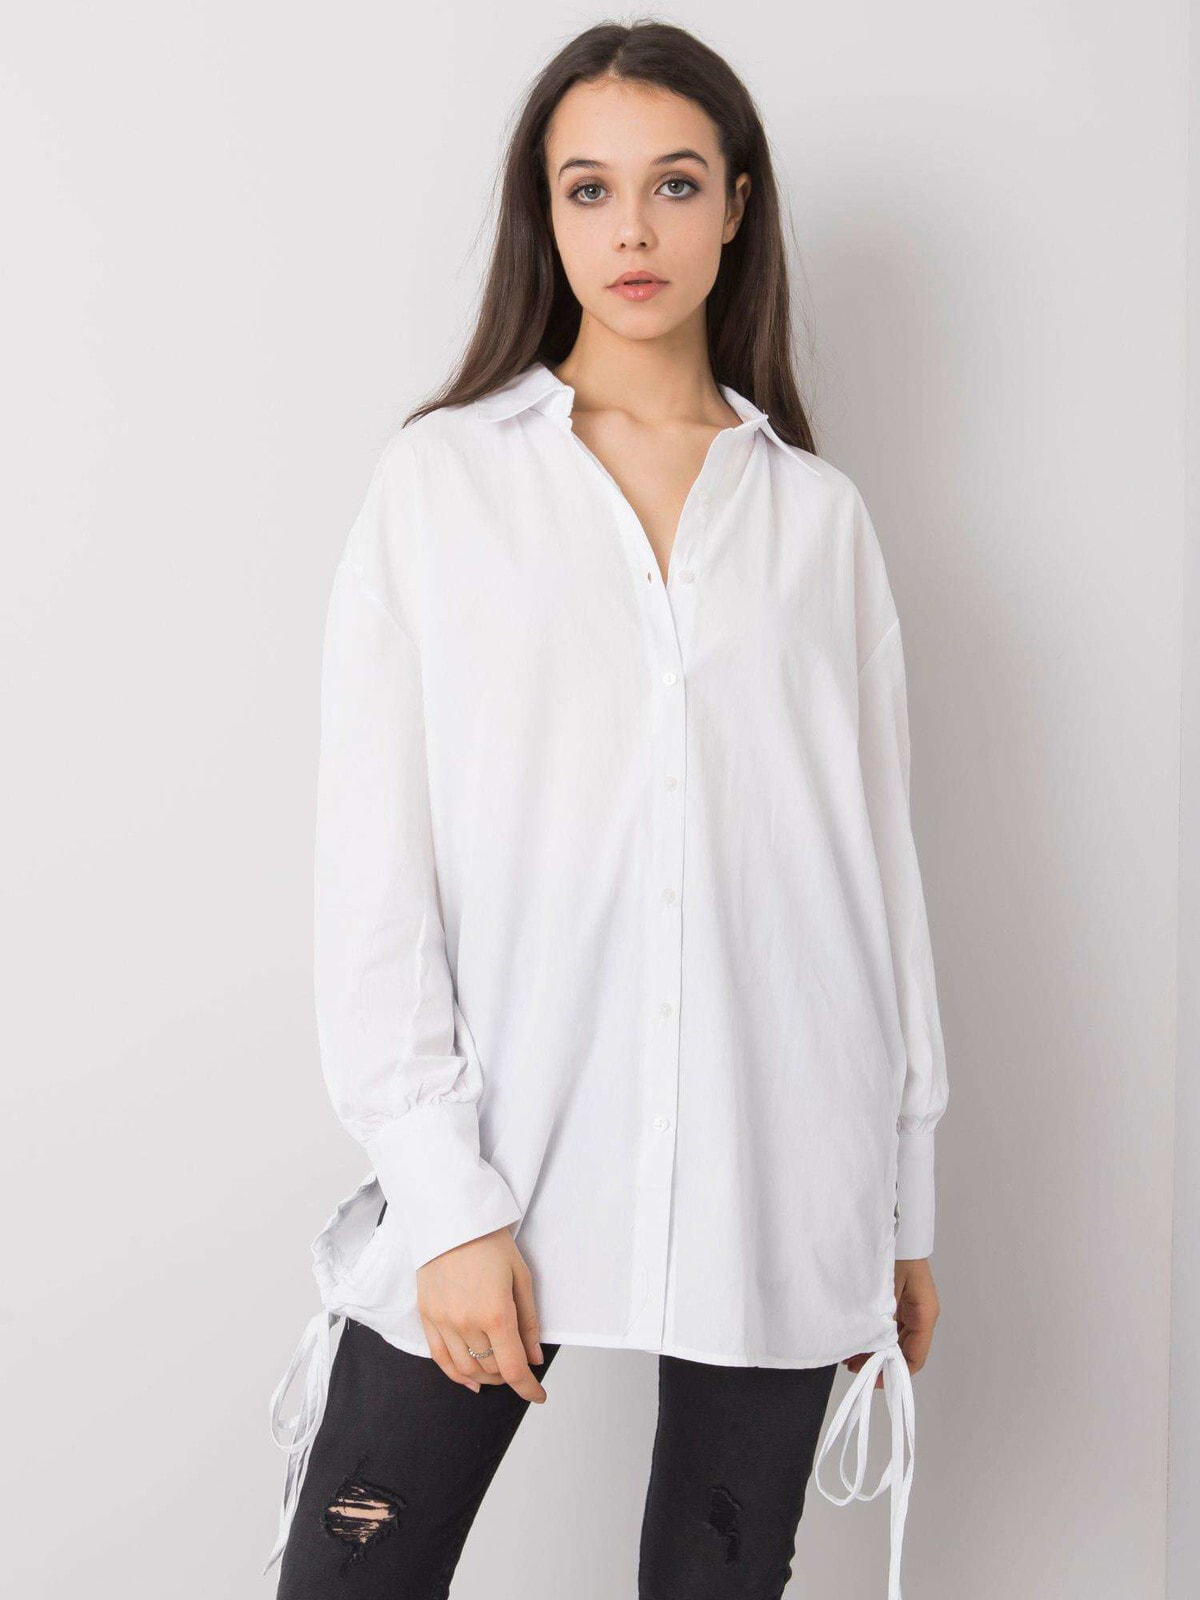 Женская рубашка свободного кроя с длинным рукавом белая Factory Price